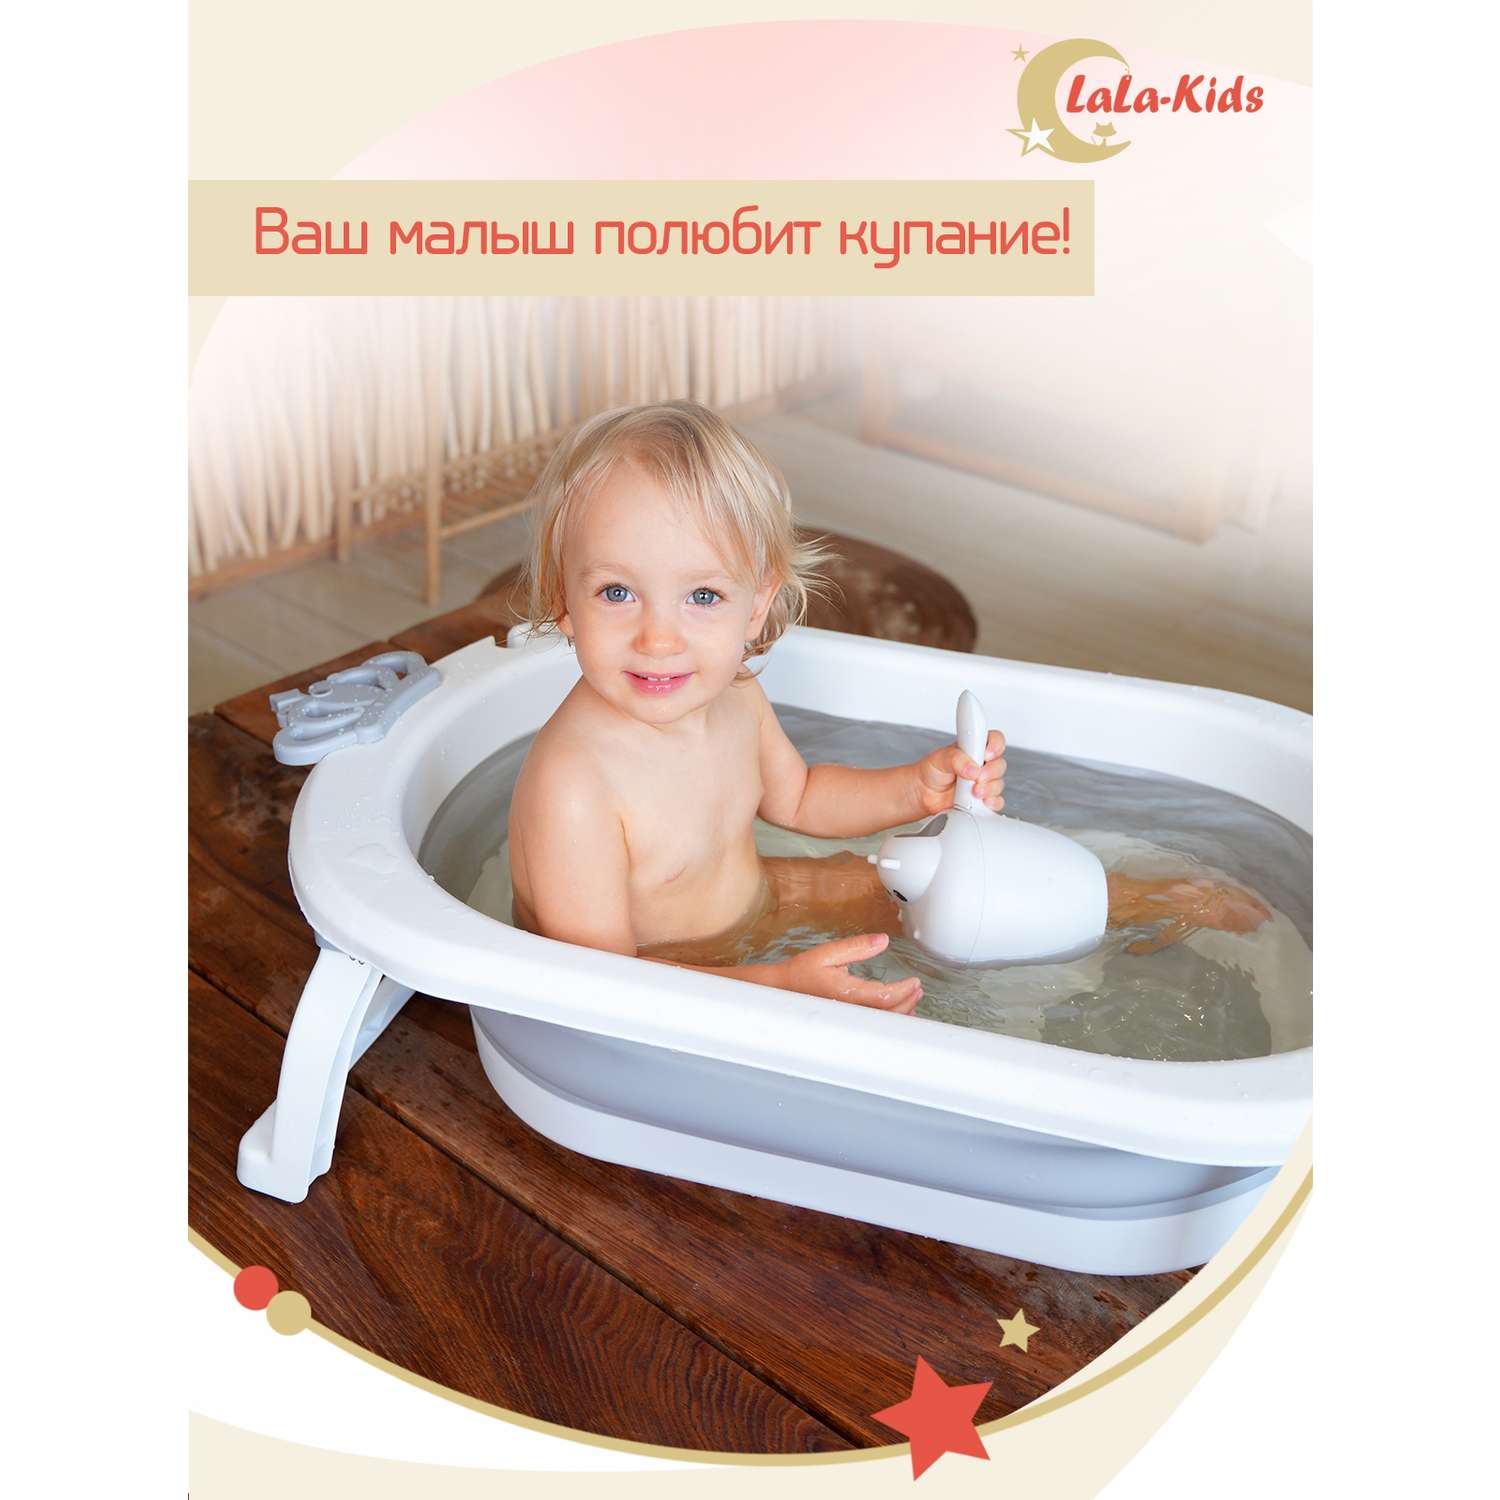 Детская ванночка с термометром LaLa-Kids складная для купания новорожденных с термометром и матрасиком в комплекте - фото 19